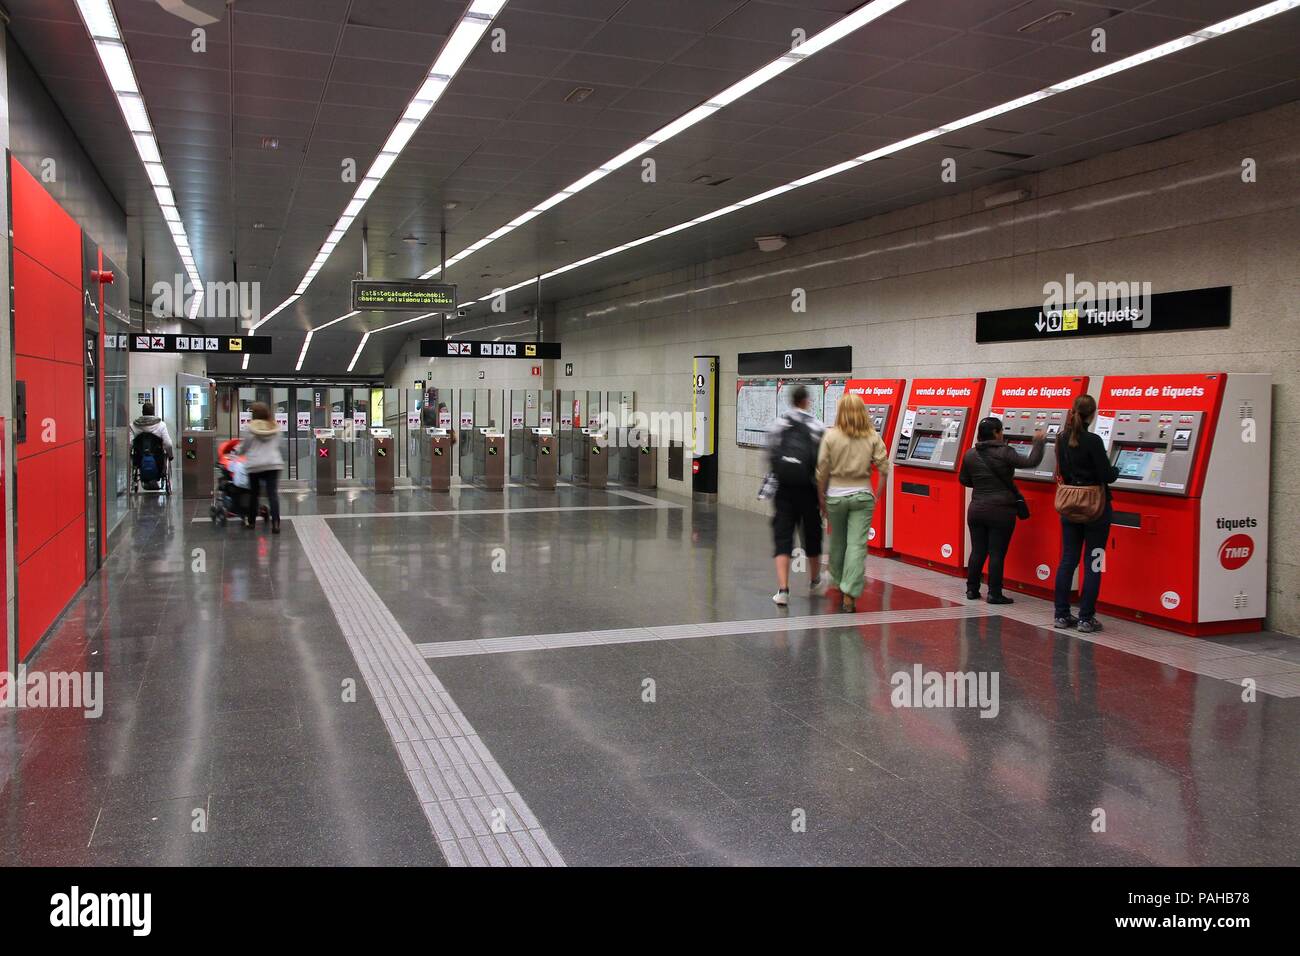 Barcelone, Espagne - 6 novembre : Les gens entrent dans Métro le 6 novembre 2012 à Barcelone, Espagne. Barcelone a le 2e système de métro la plus achalandée en Spai Banque D'Images